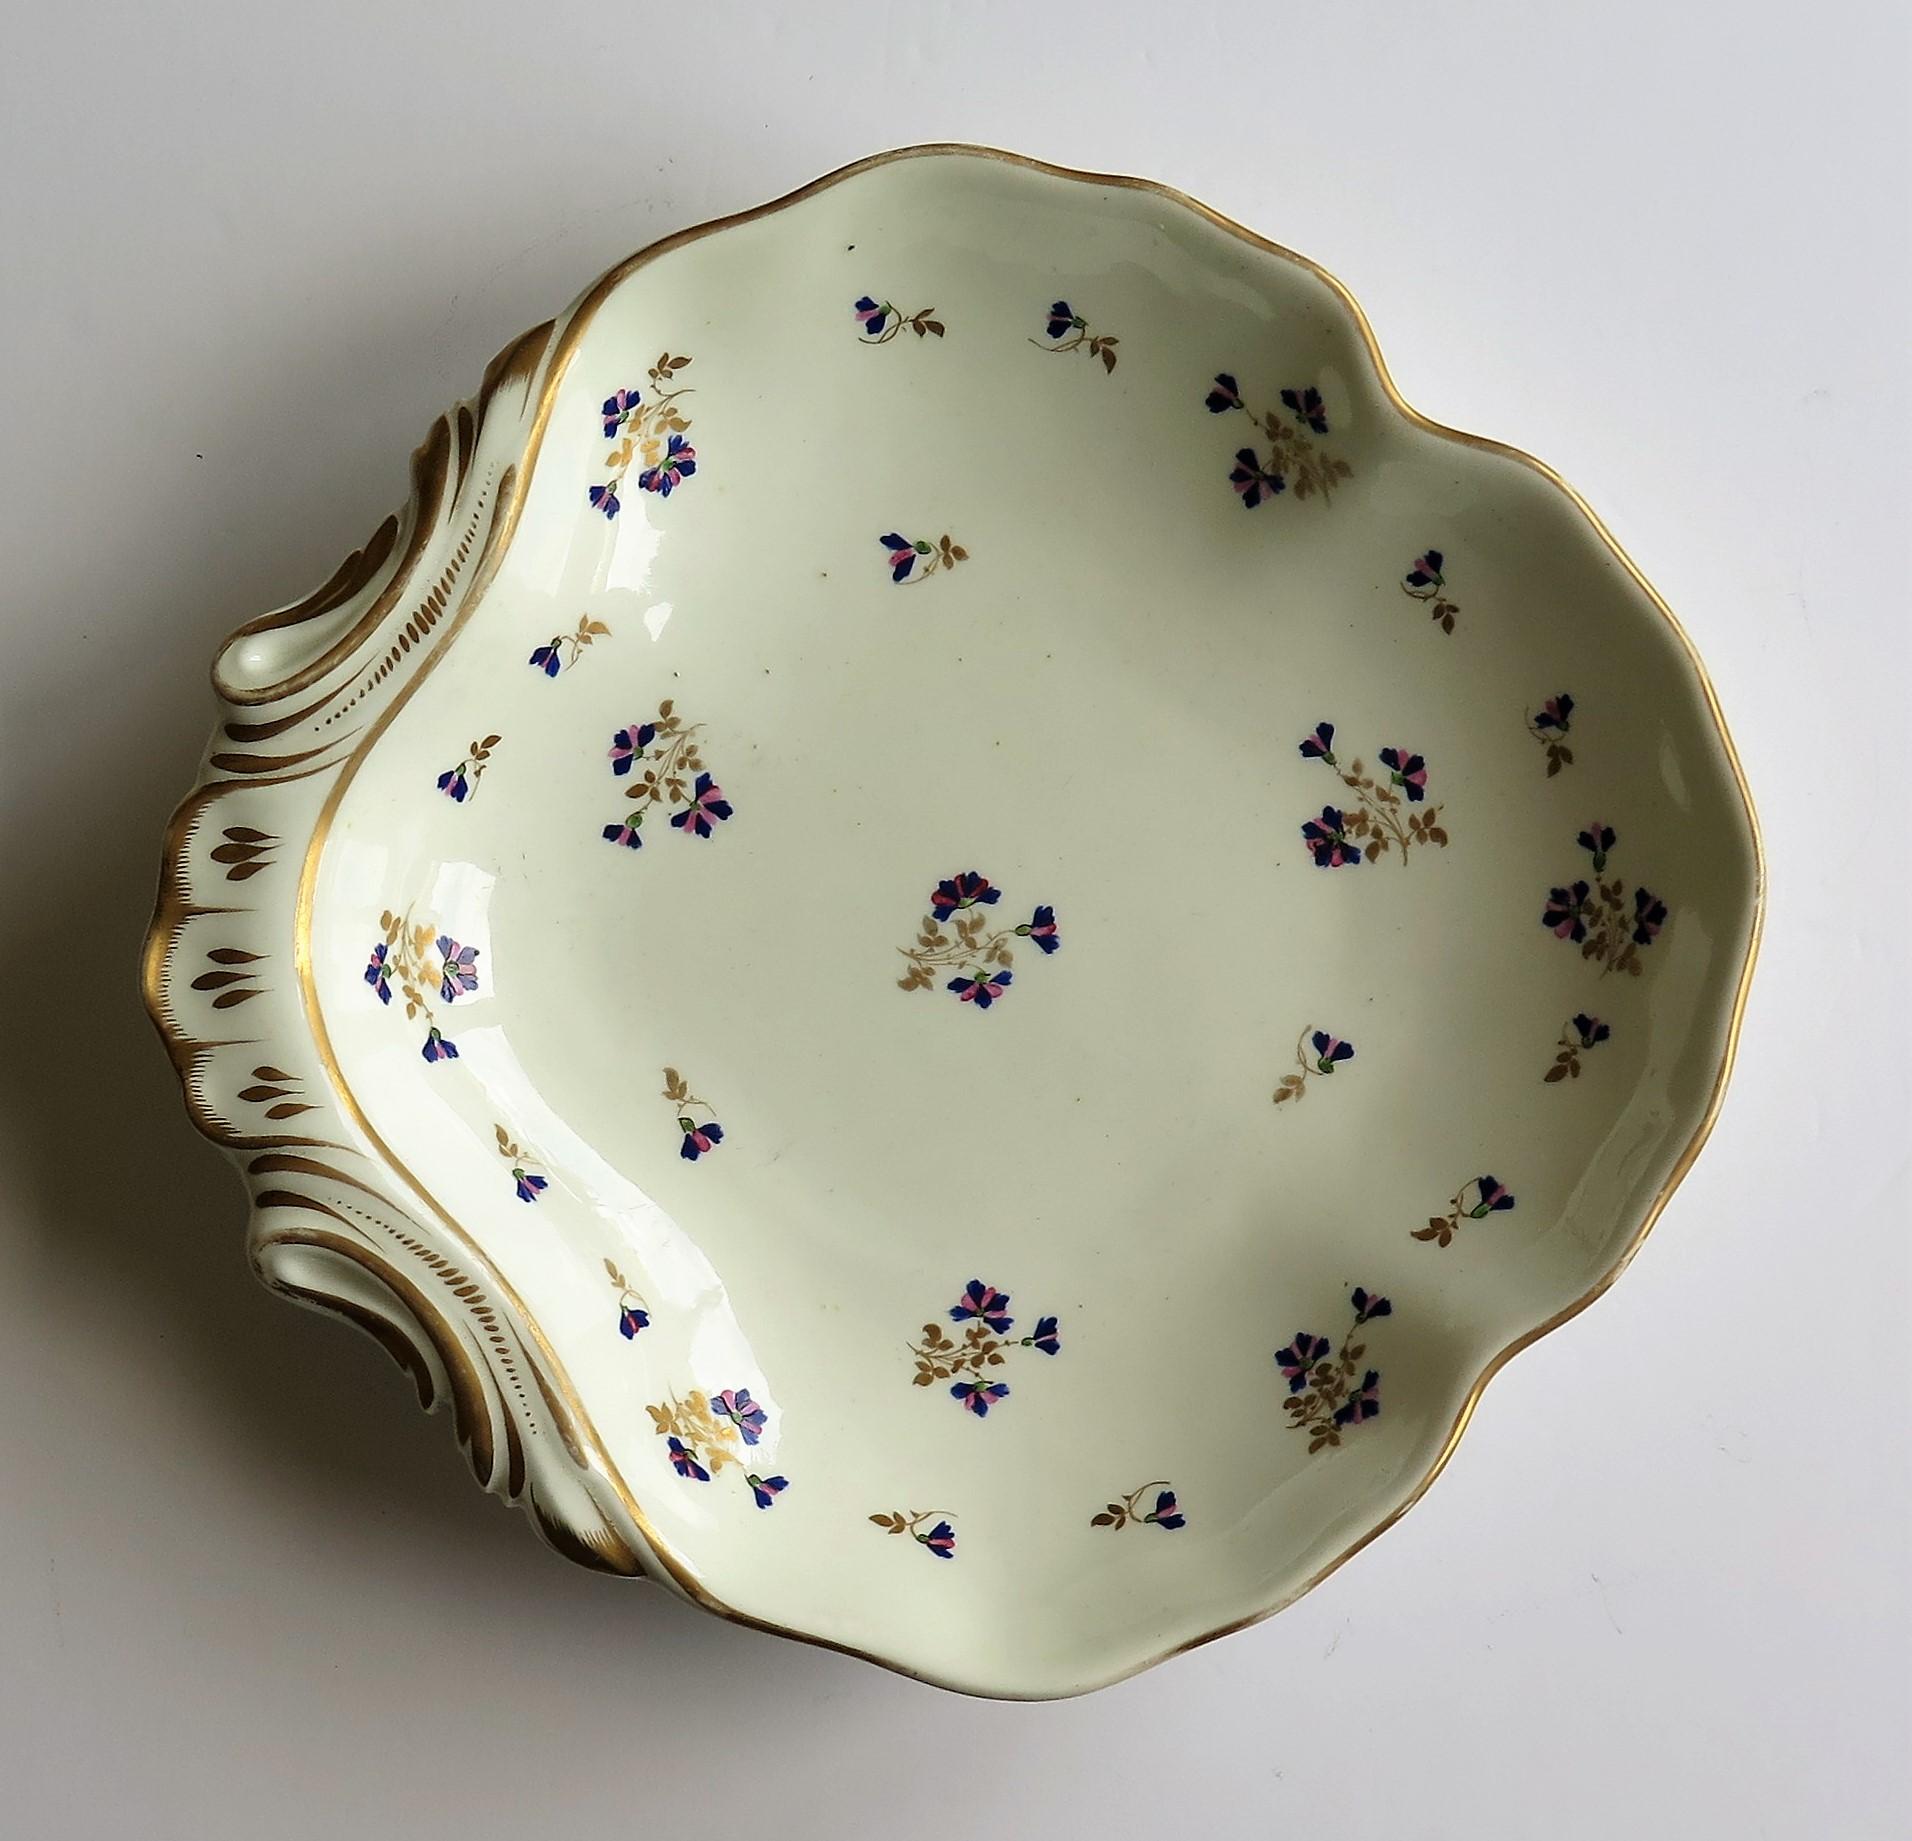 Dies ist eine schöne Porzellan Muschel Schüssel oder Teller von Hand bemalt und vergoldet in Muster 129, von der Fabrik Derby, in der Herrschaft von George 111 im frühen 19. Jahrhundert, ca. 1810.
 
Muschelschalen, die so genannt werden, weil sie